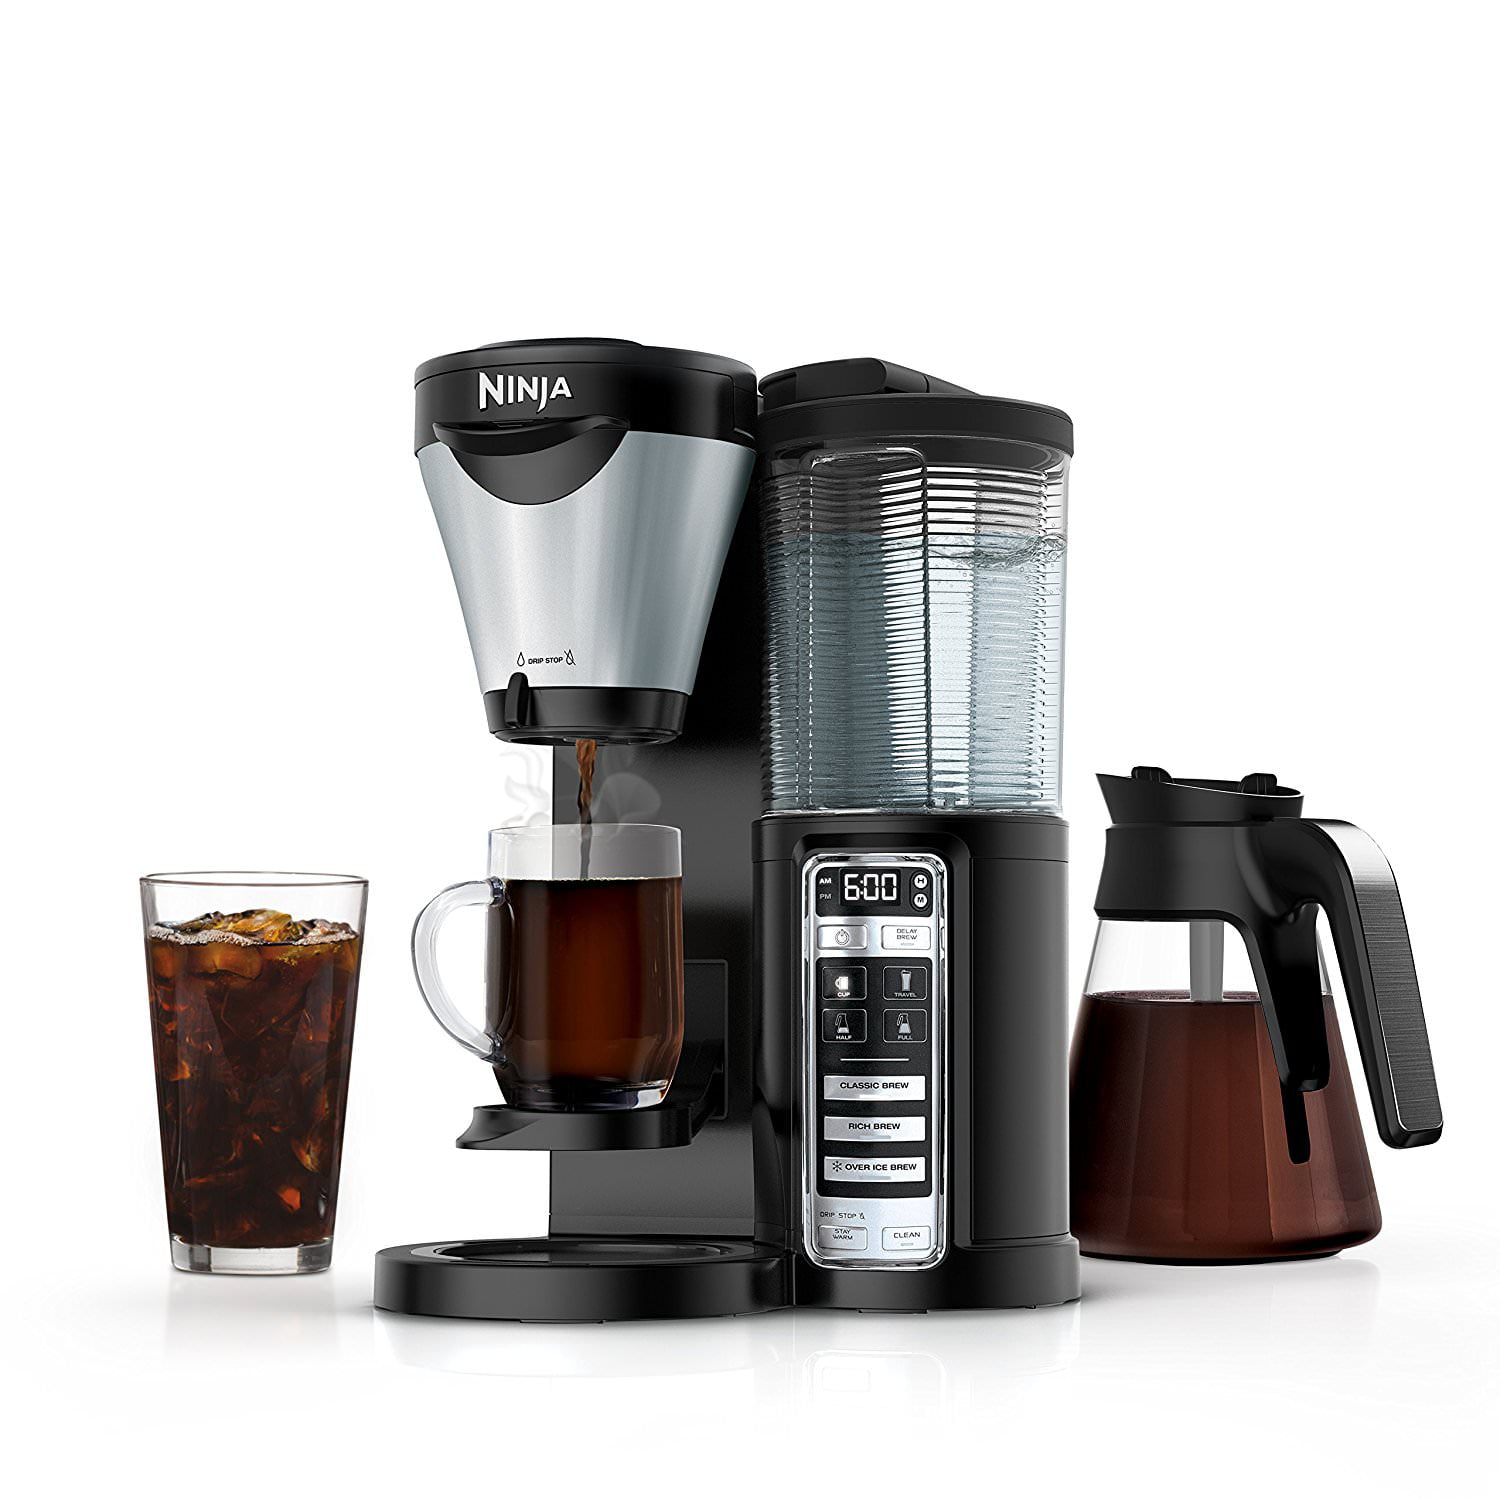 Ninja Coffee Bar review: Ninja coffee maker offers many ways to